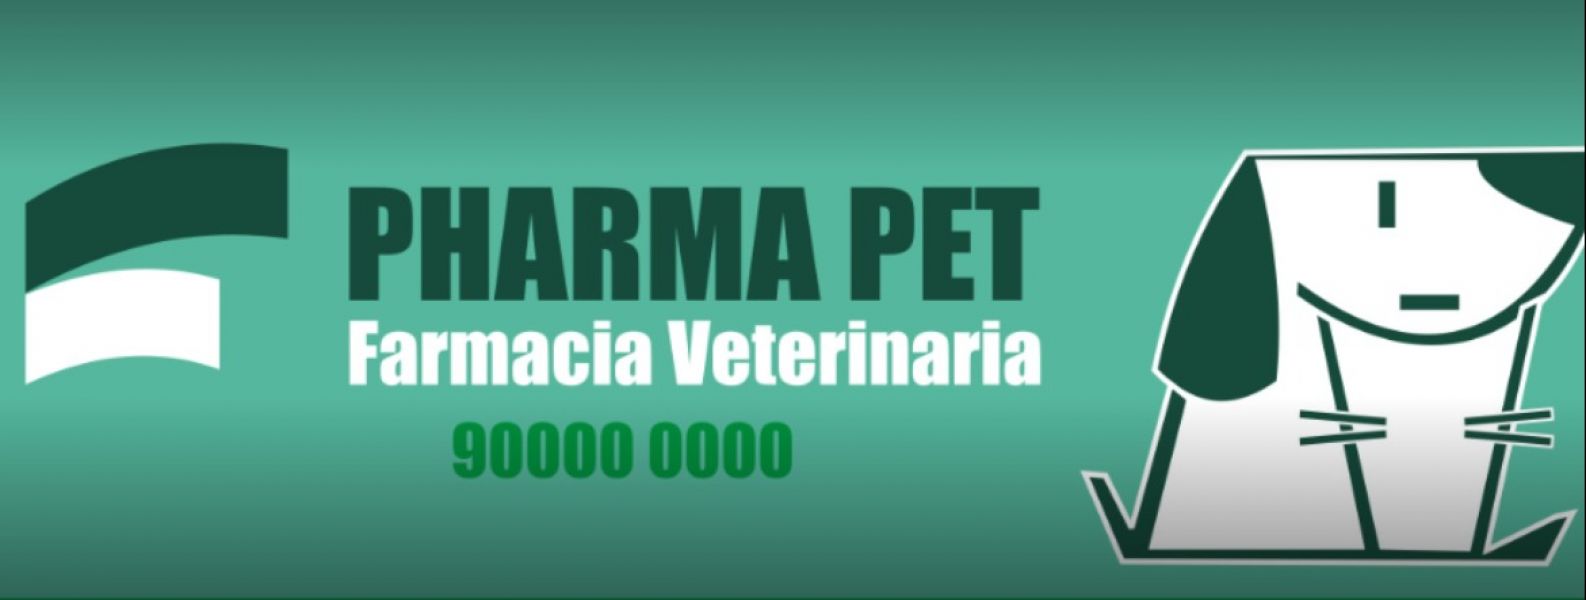 Pharma Pet Farmácia Veterinária e Pet Shop - Saracuruna